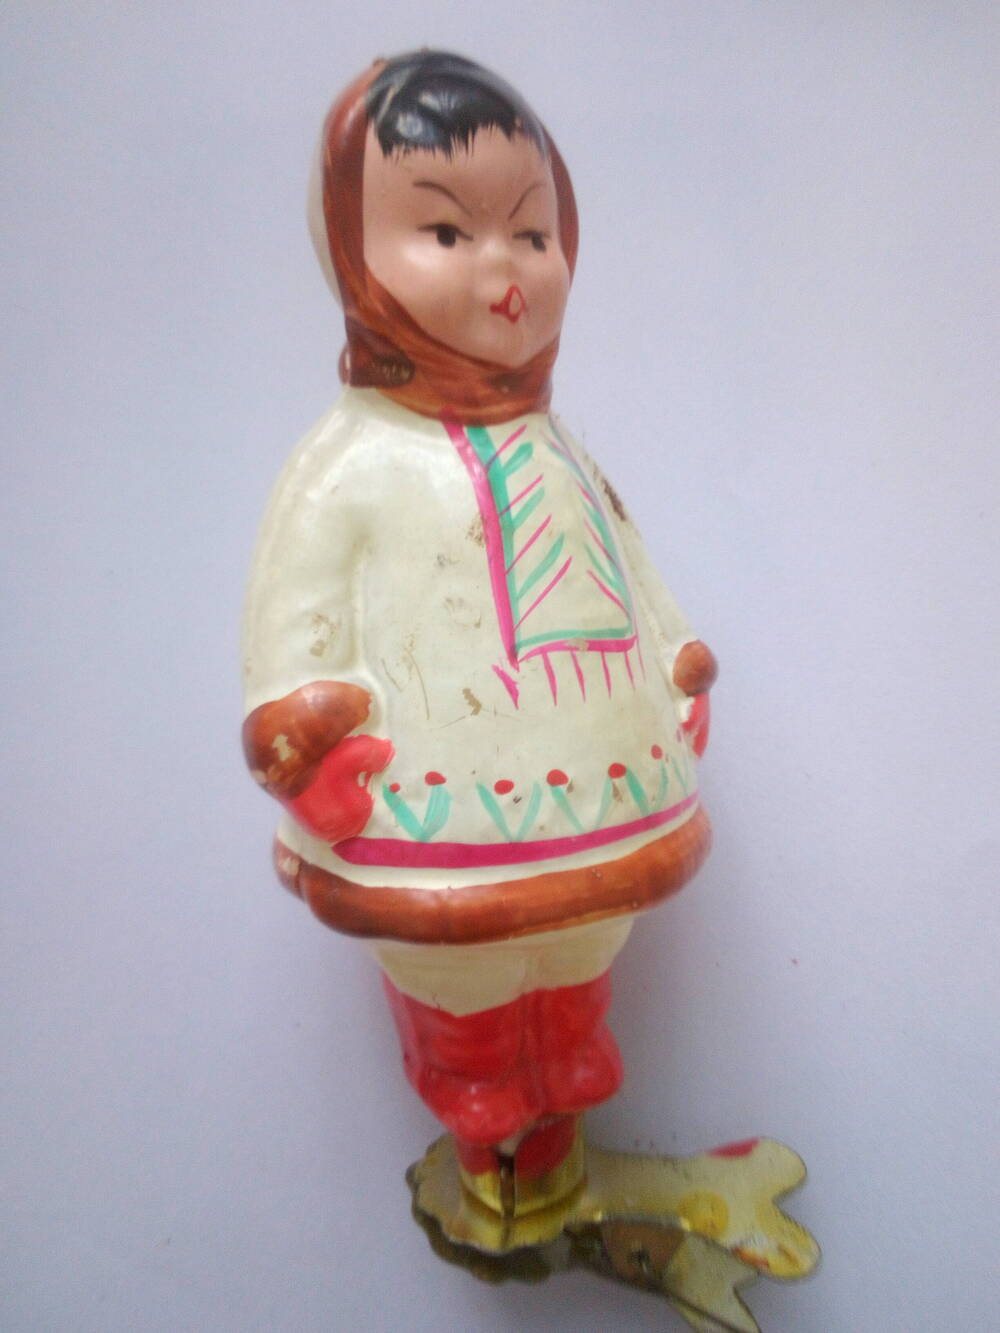 Ёлочная игрушка. Девочка - якутка. Из коллекции ёлочных игрушек. 1950-60 гг.